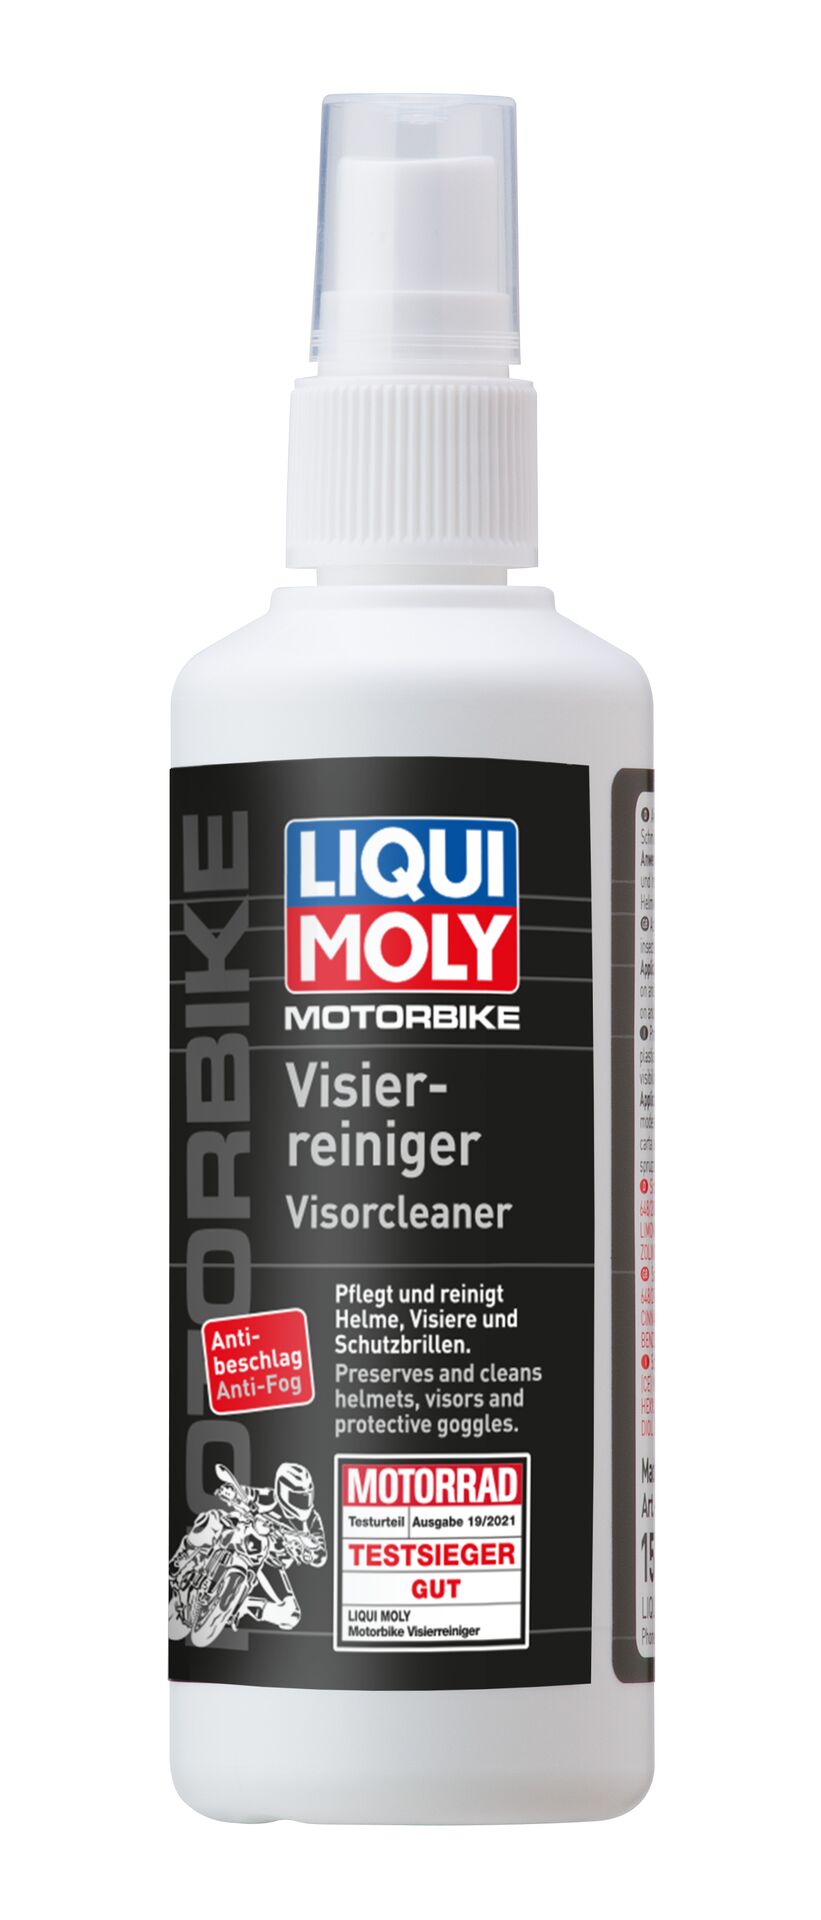 Liqui Moly Motorbike Visierreiniger Spray Universalreiniger 100 ml